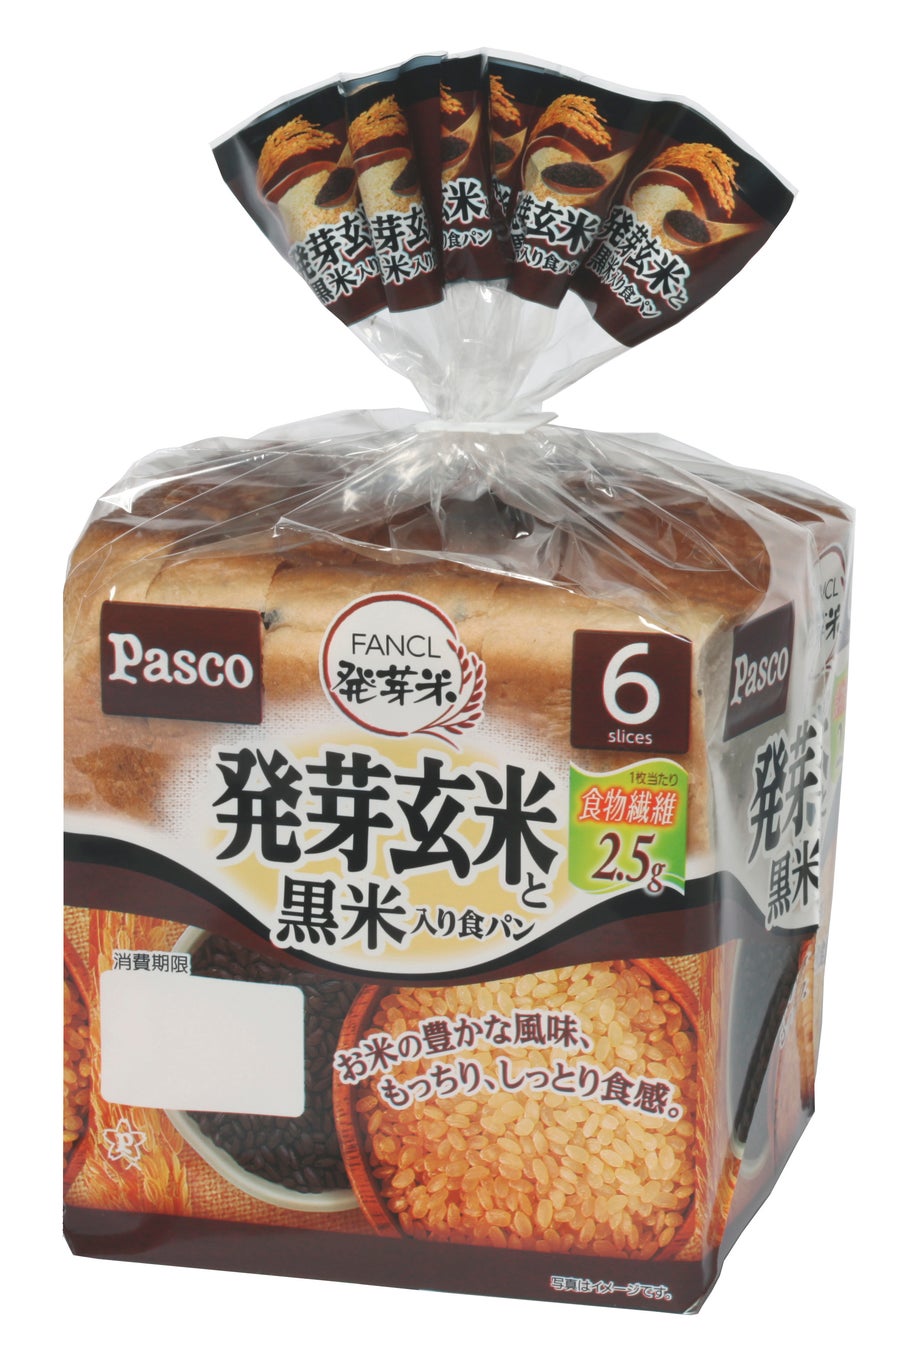 2月1日 新発売「発芽玄米と黒米入り食パン」